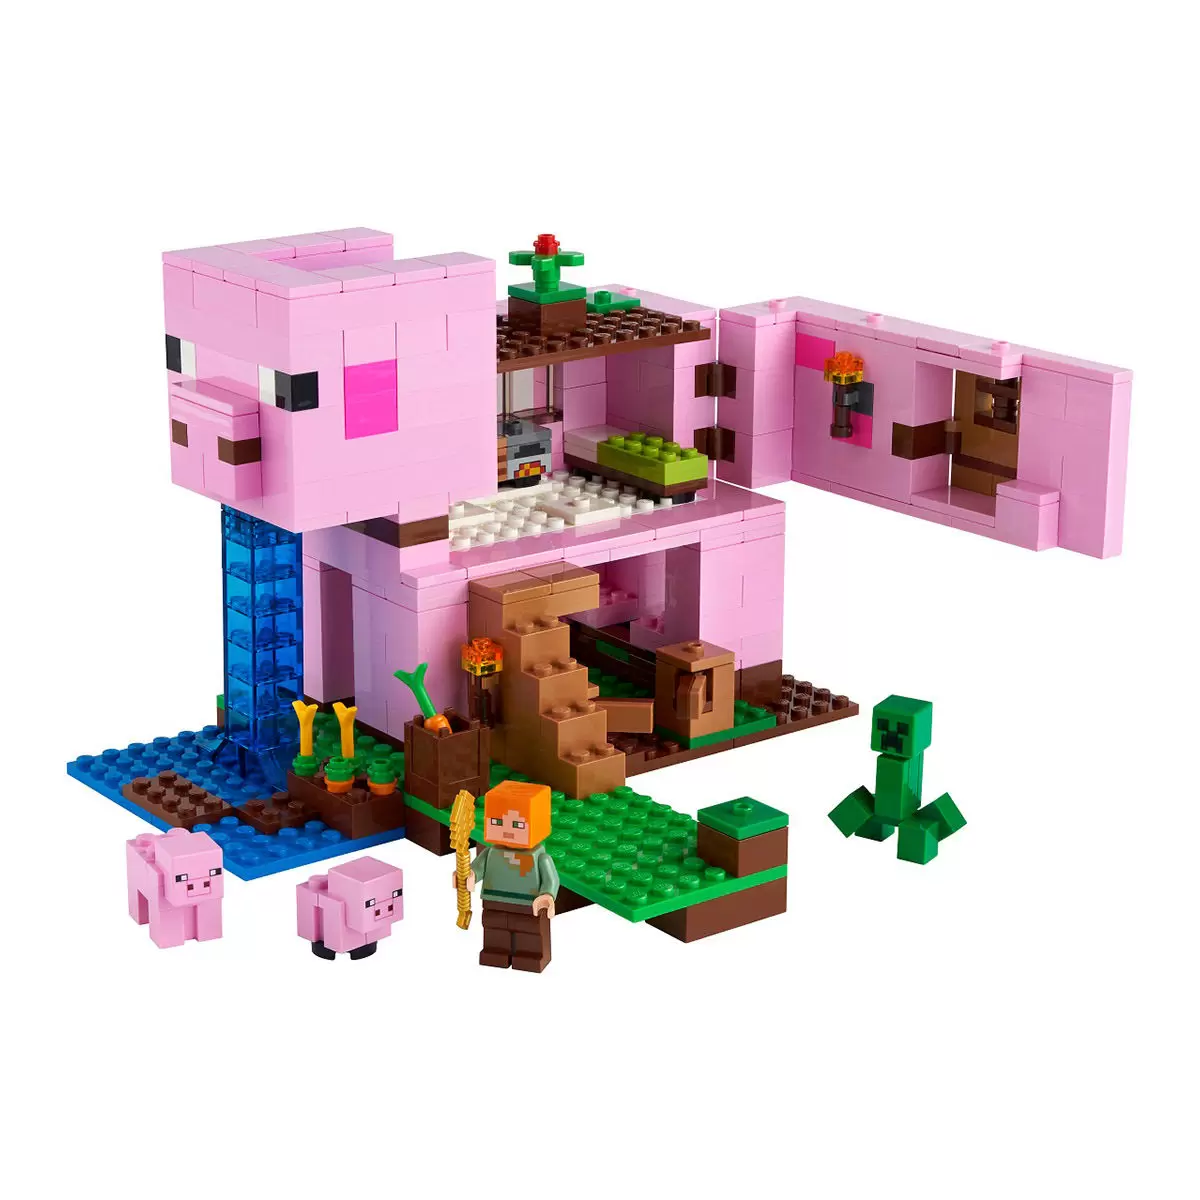 LEGO Minecraft系列 豬豬屋 21170